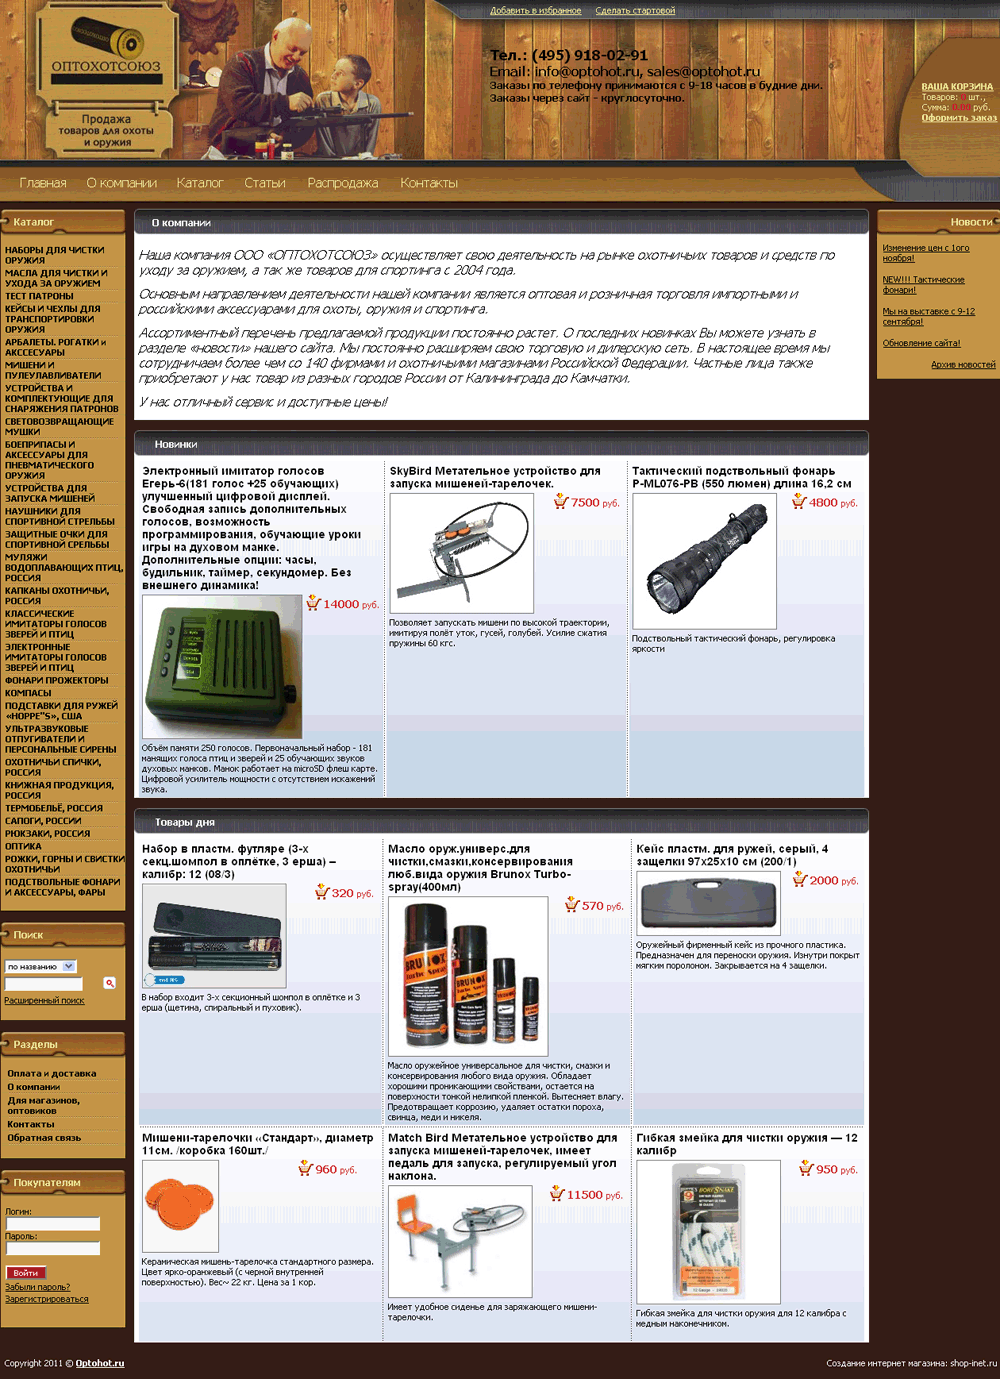 Cозданый интернет-магазин оружия и товаров для охоты